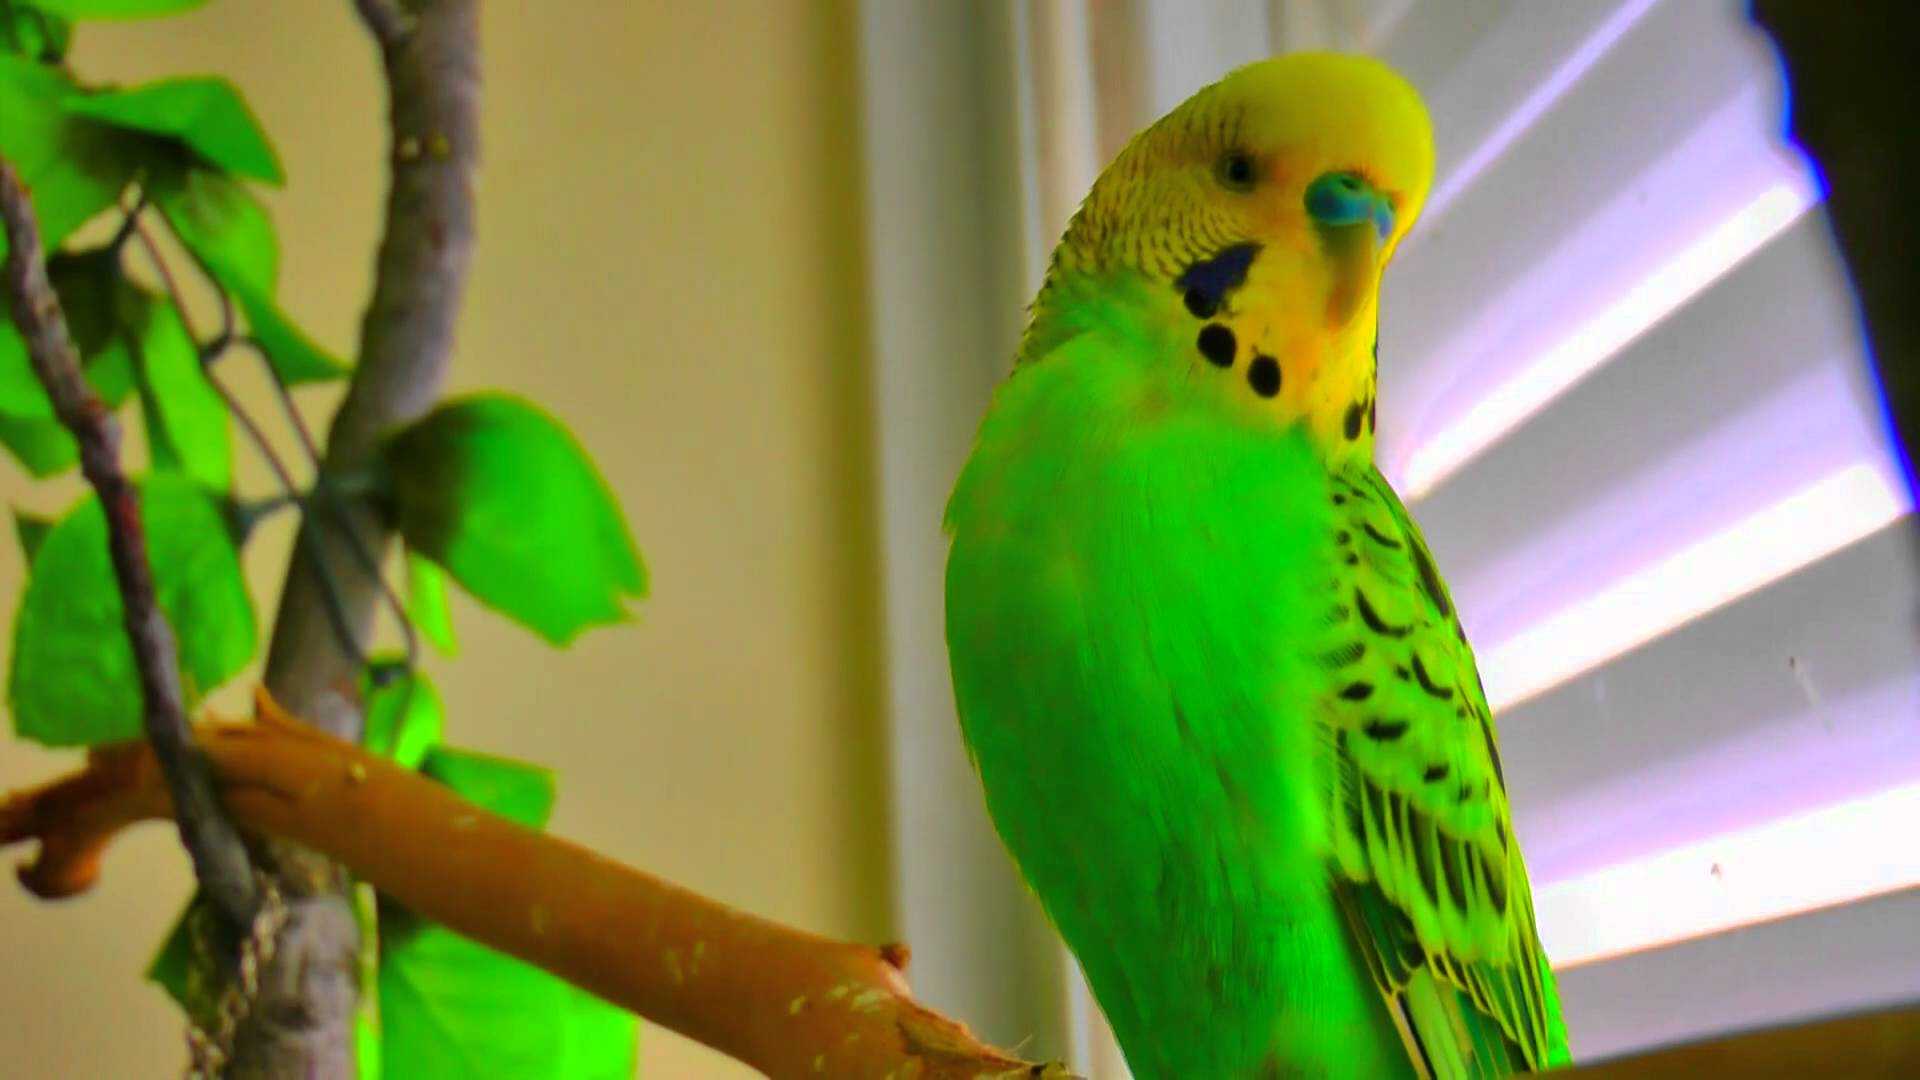 Волнистый попугайчик : фото, видео, содержание и размножение